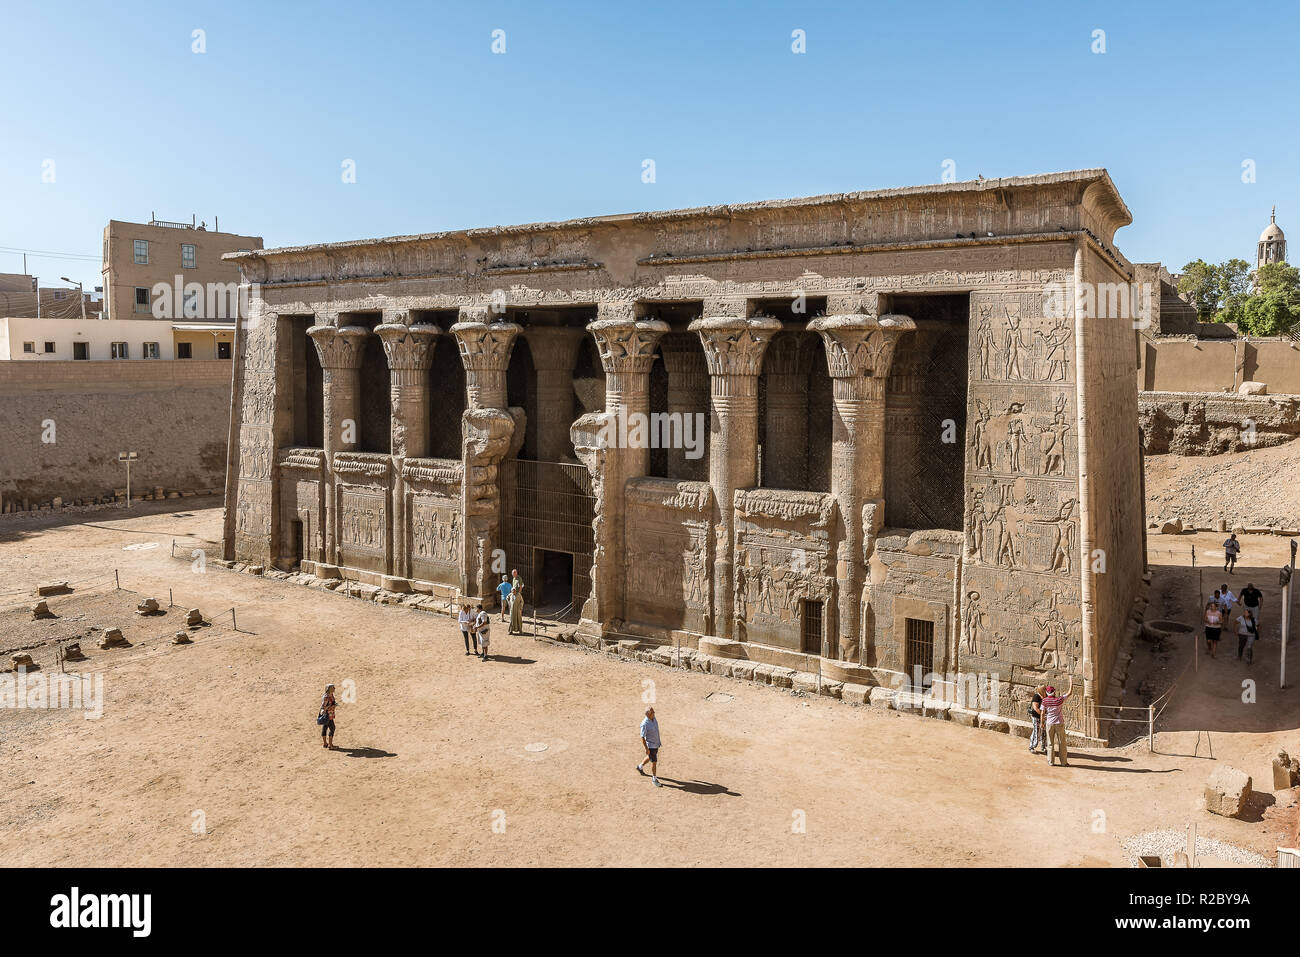 Una sala delle colonne con 24 pilastri con Lotus e palm capitelli, uno dei templi più recenti sia stata costruita dagli antichi egizi, Esna, Egitto, O Foto Stock